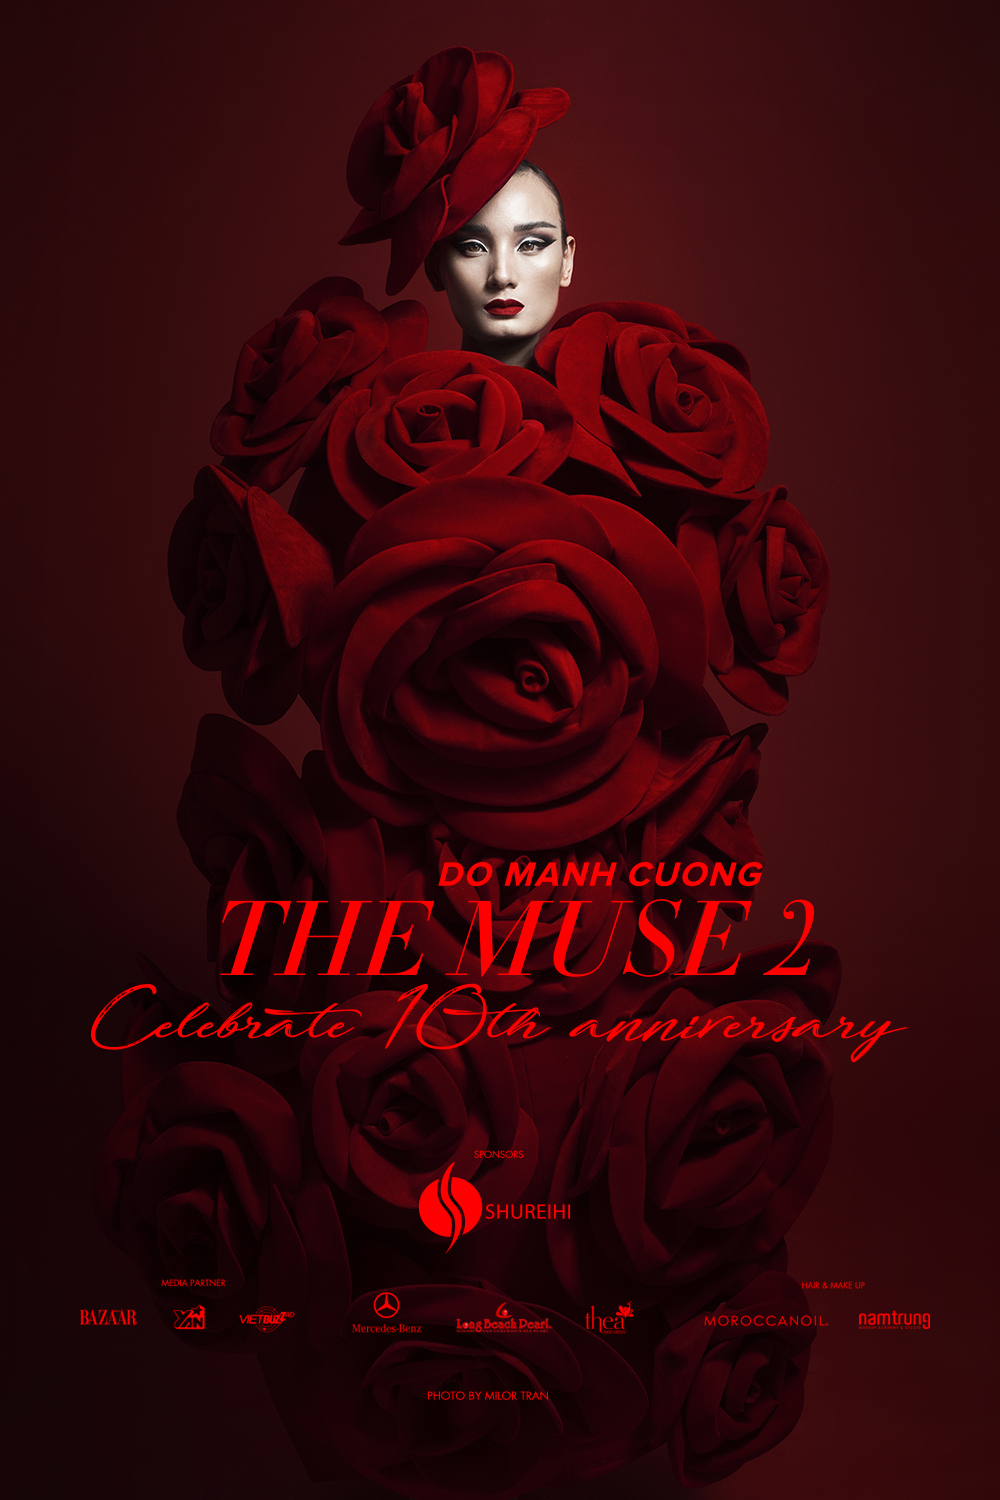 Poster chính thức cho show diễn "The Muse 2" với tông màu đỏ chủ đạo 